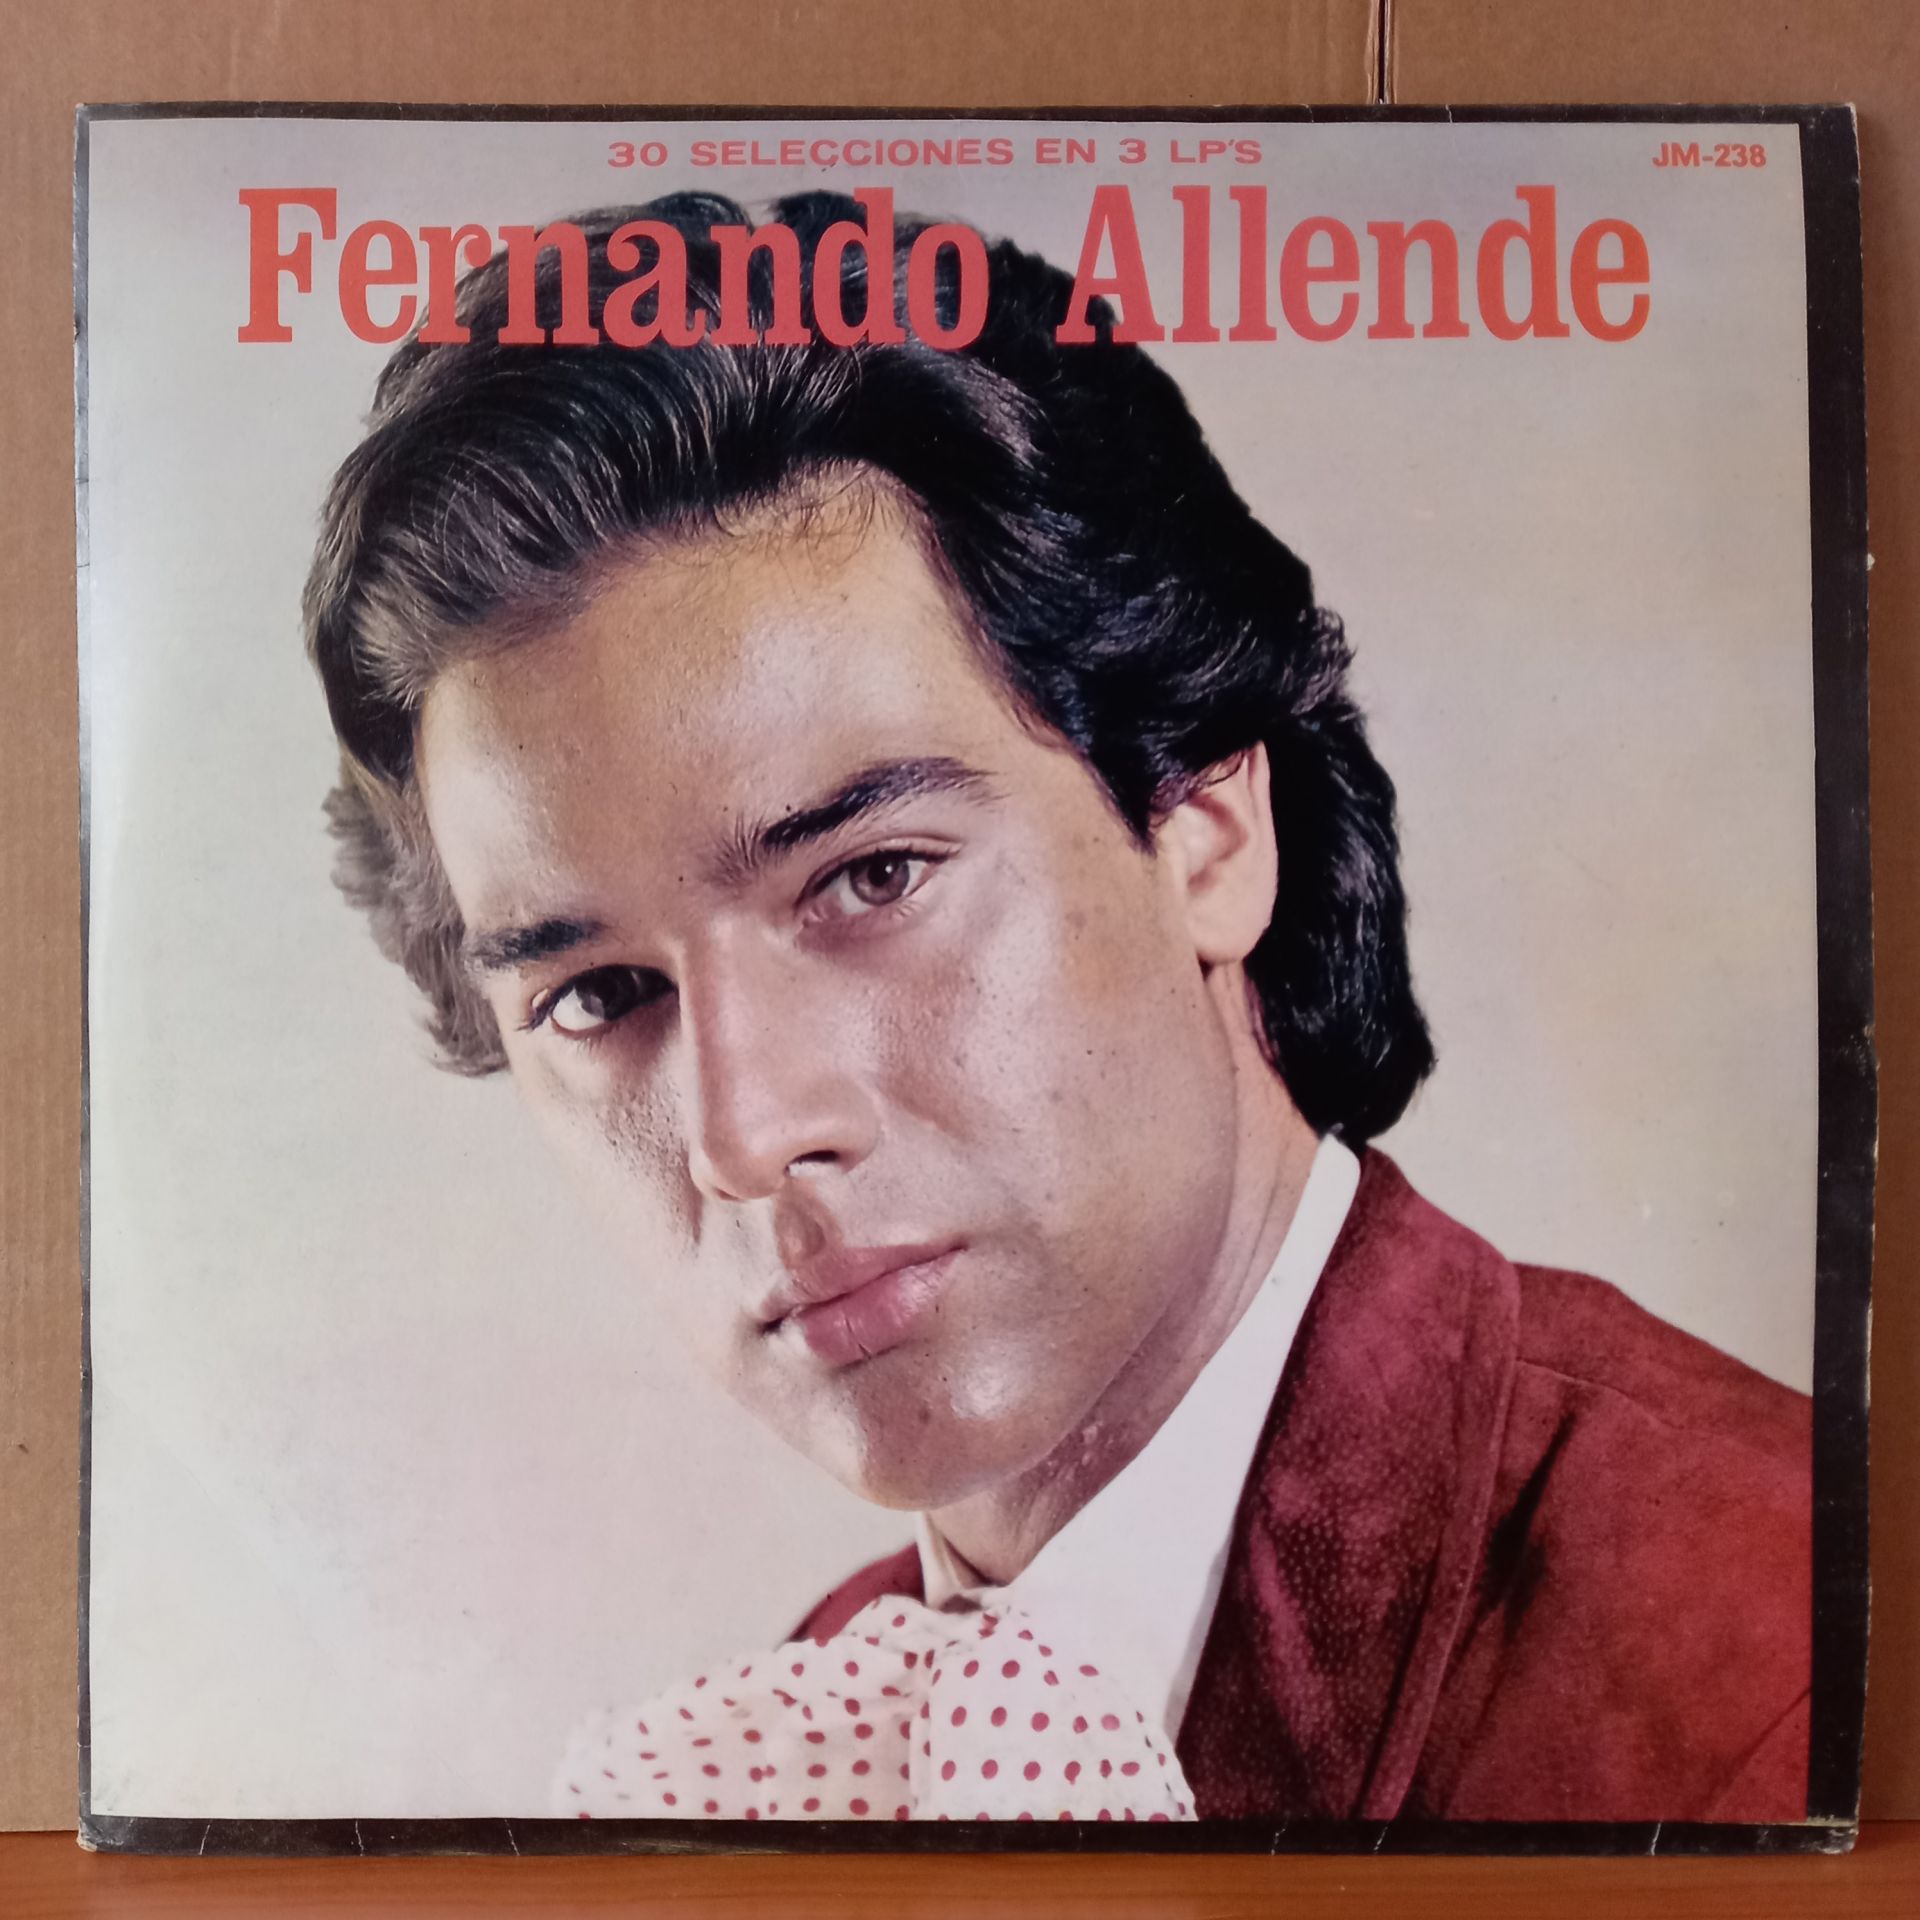 FERNANDO ALLENDE - FERNANDO ALLENDE (1977) - 3LP 2.EL PLAK